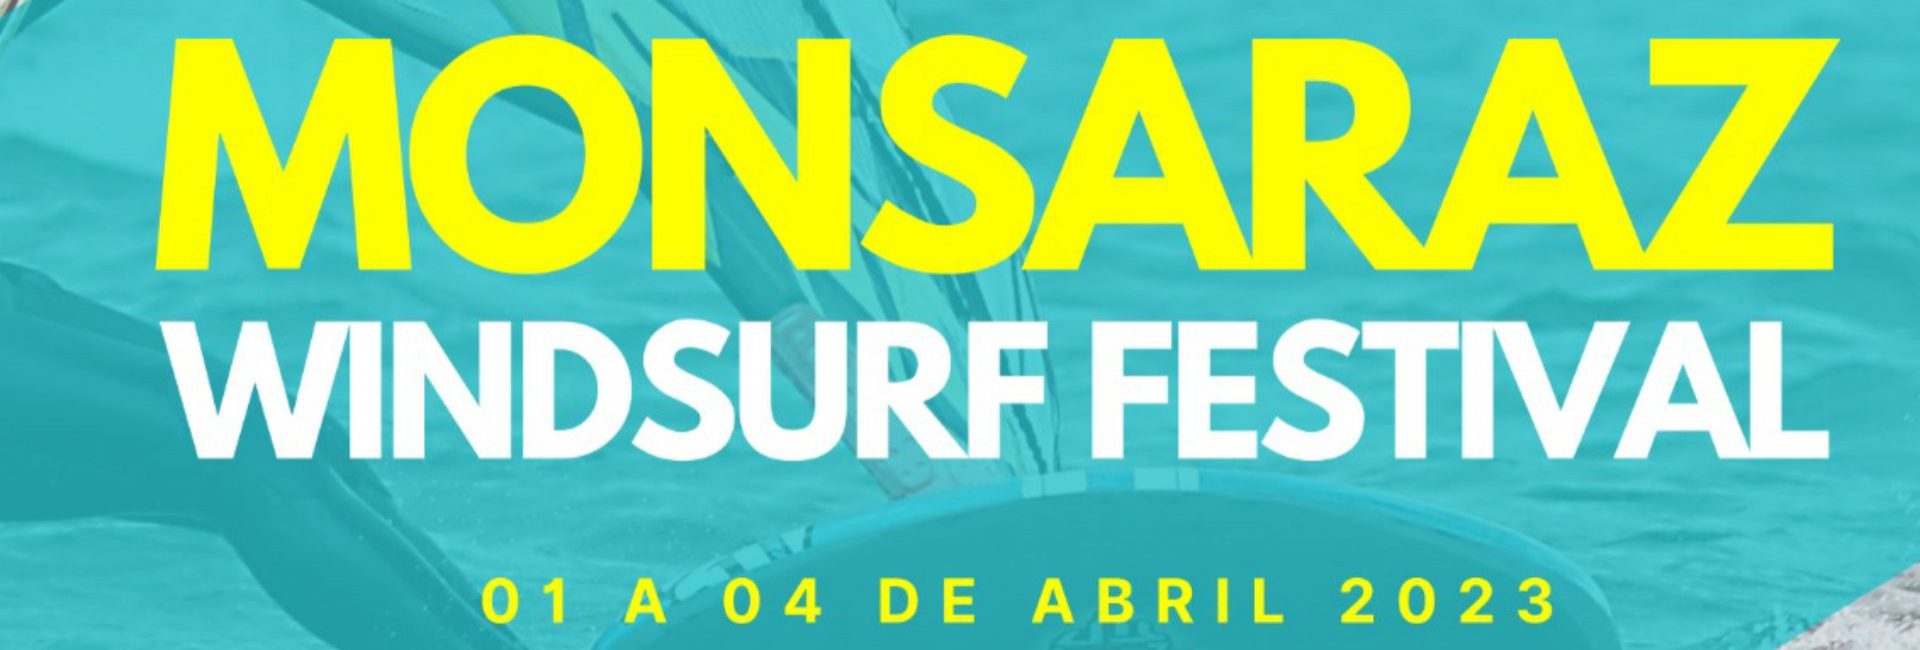 2023-04-01_monsaraz windsurf festival 2023